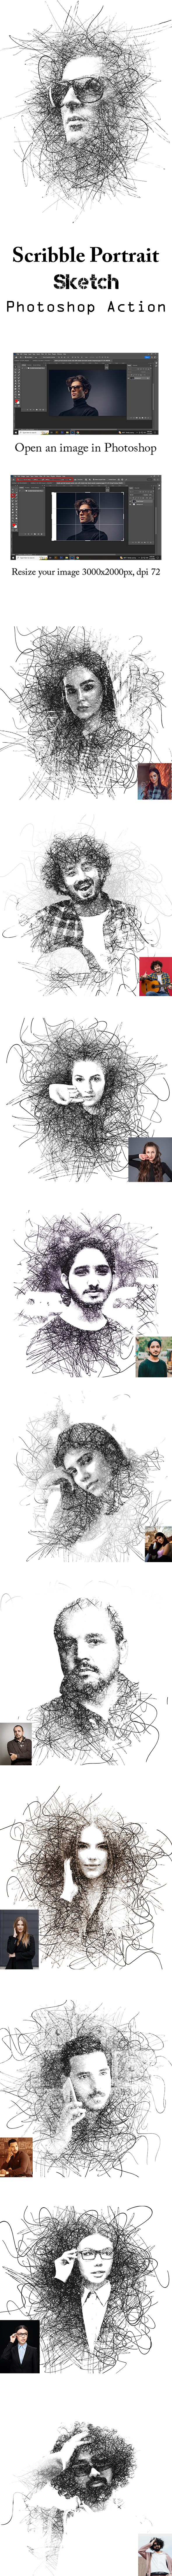 [DOWNLOAD]Scribble Portrait Sketch Photoshop Action